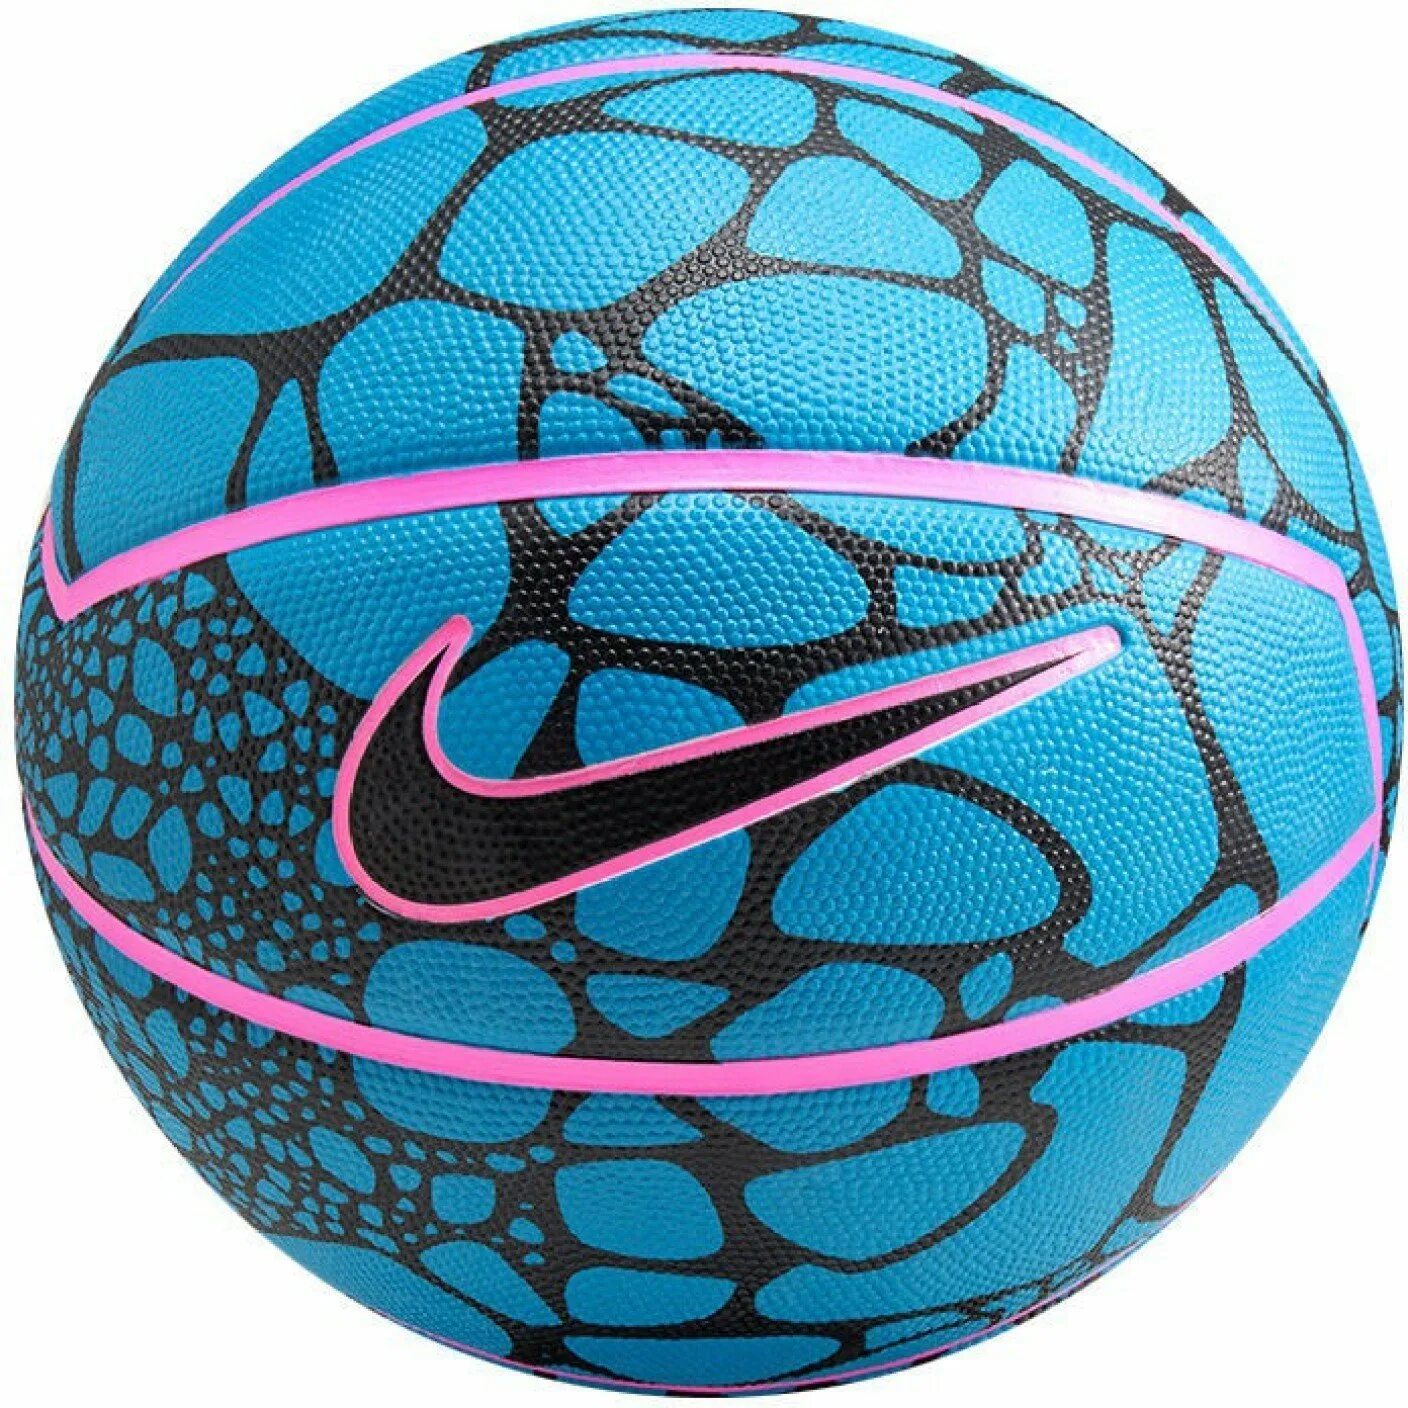 Спортивные магазины баскетбольные мячи. Мяч Nike LEBRON. Nike LEBRON Basketball Ball. Баскетбольный мяч найк синий. Баскетбольный мяч Nike фиолетовый.